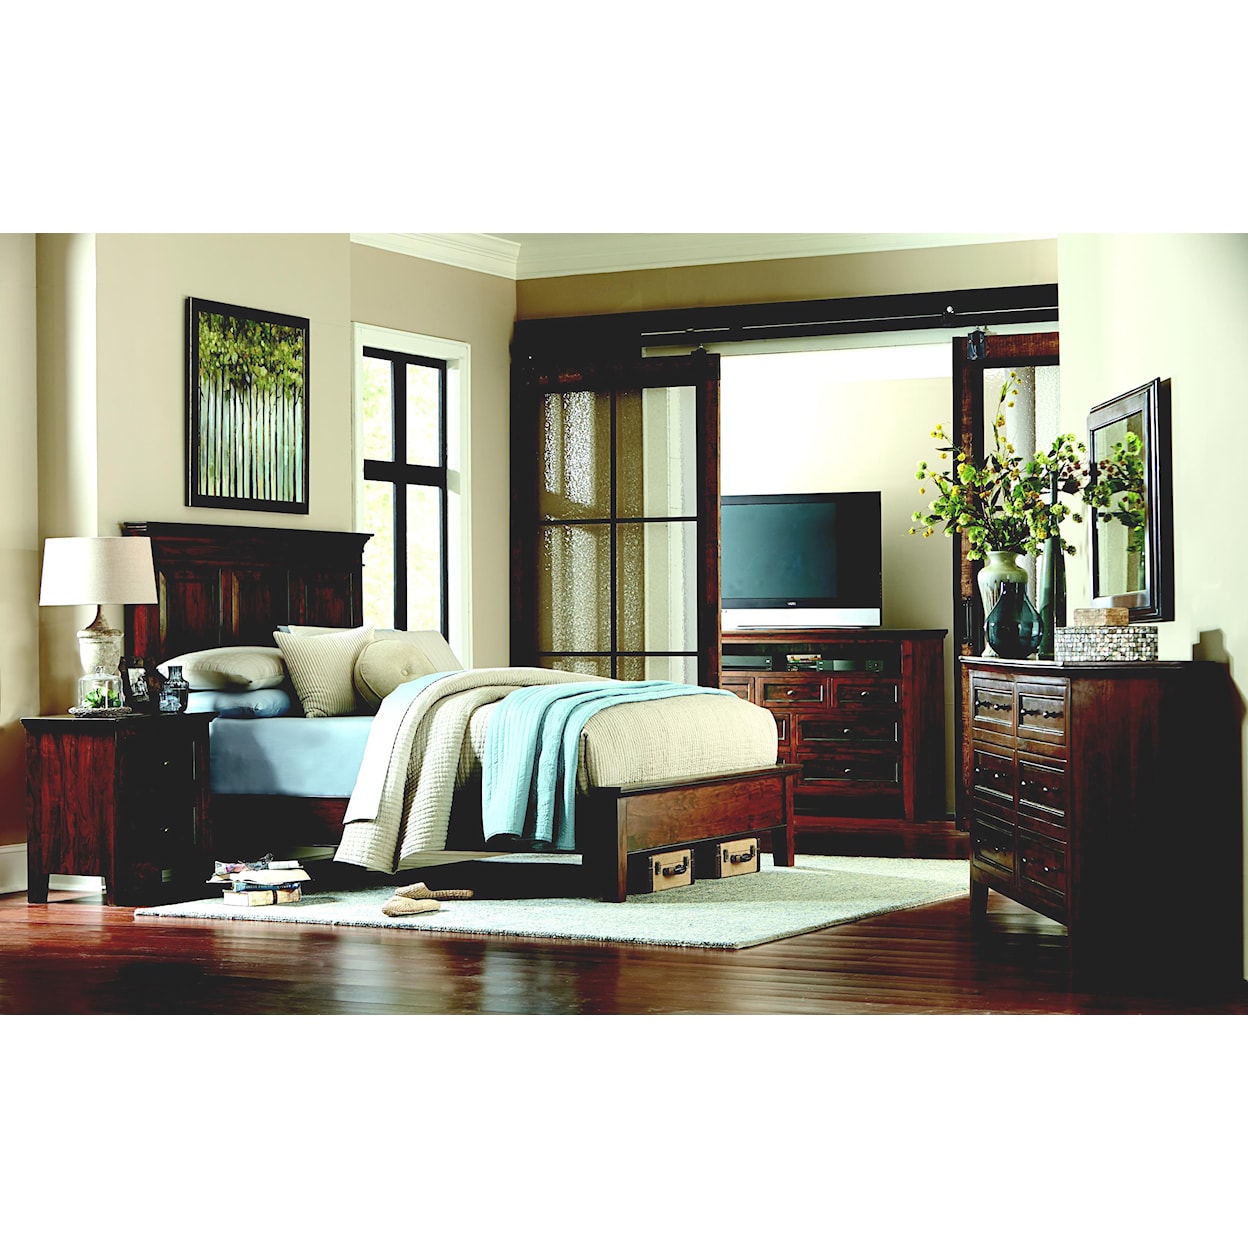 Home Trends & Design FTU Queen Bedroom Group